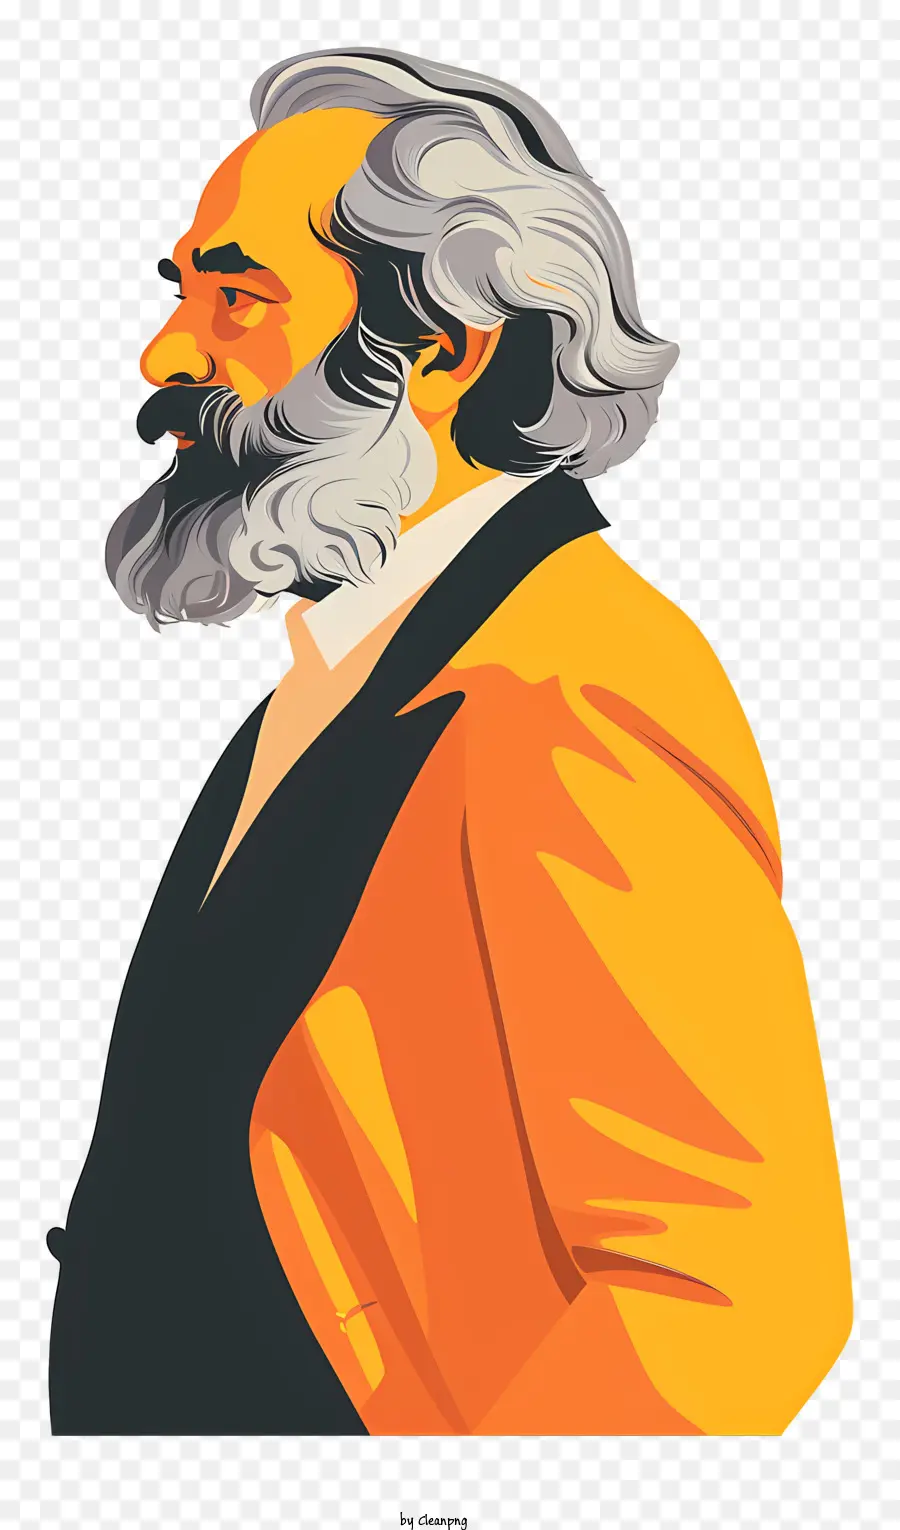 karl marx - Người đàn ông trong hồ sơ với áo khoác màu cam và cà vạt